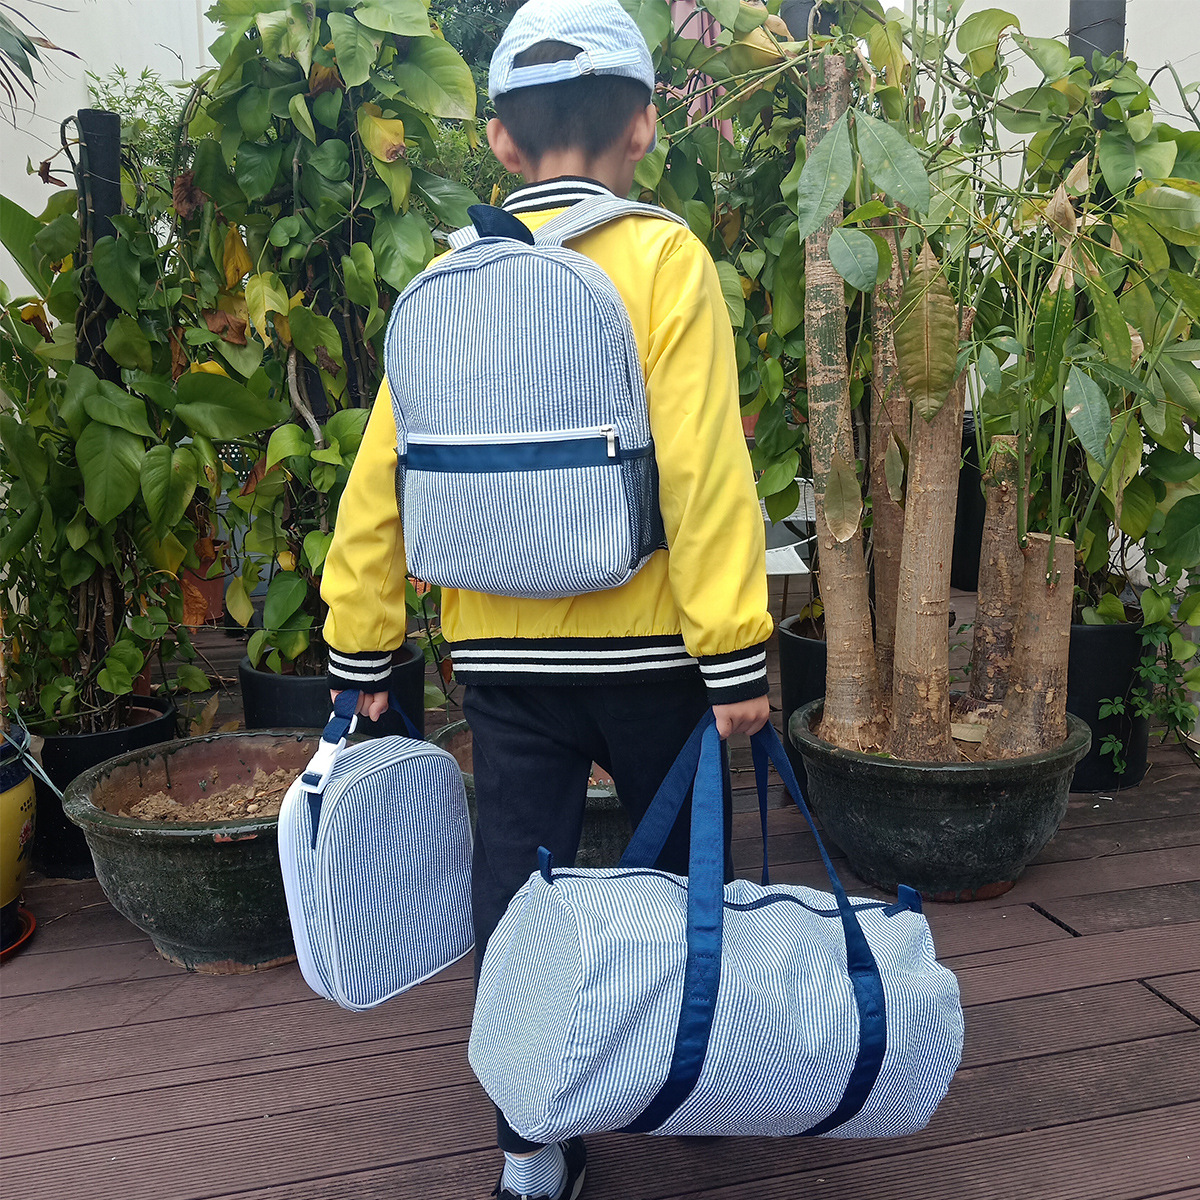 Cross-Border New Arrival Seersucker Children's Backpack Lunch Bag Outdoor Travel Bag Wholesale Student Schoolbag